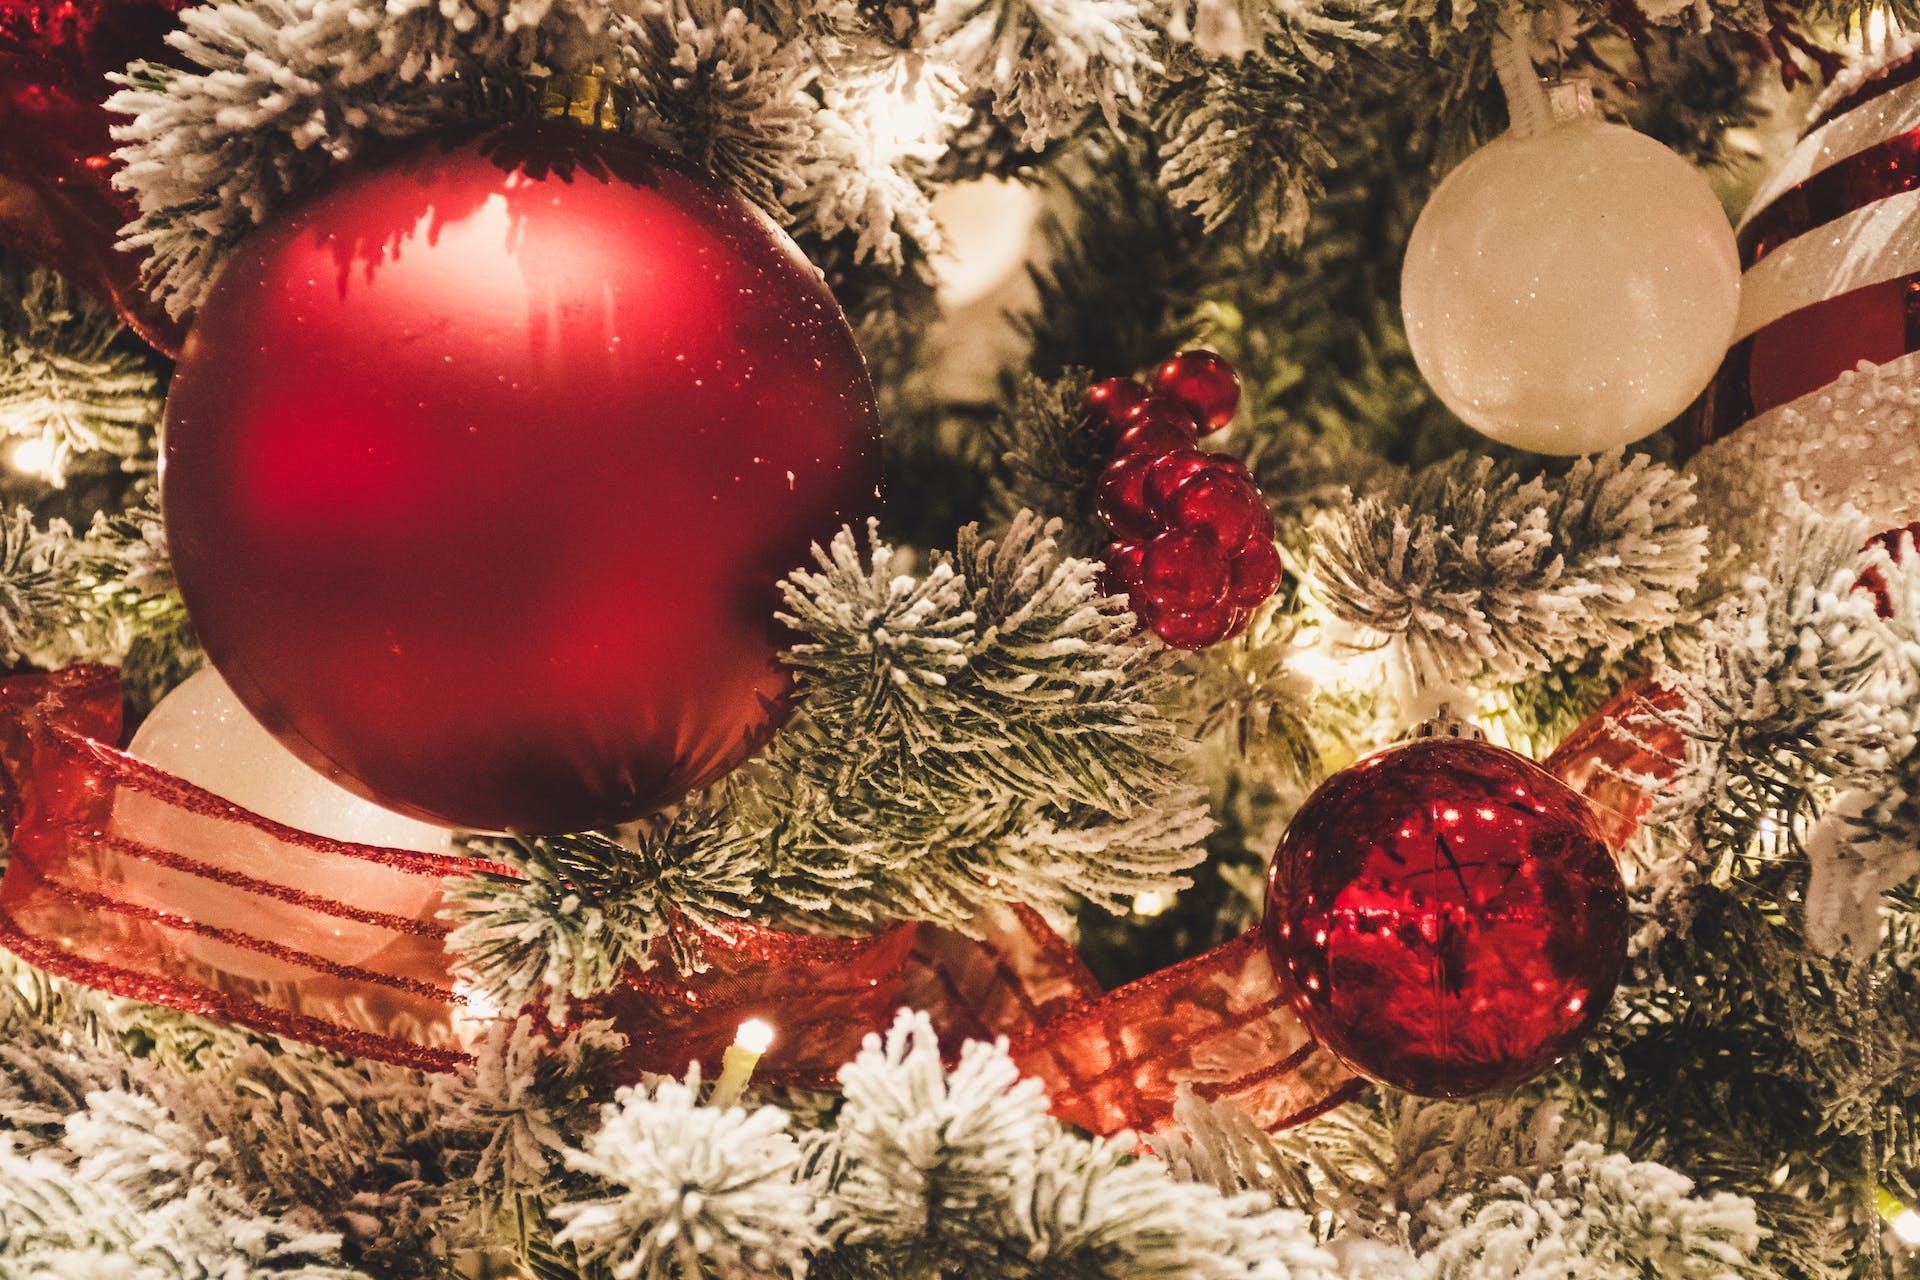 ¿Cómo decorar tu árbol de Navidad?